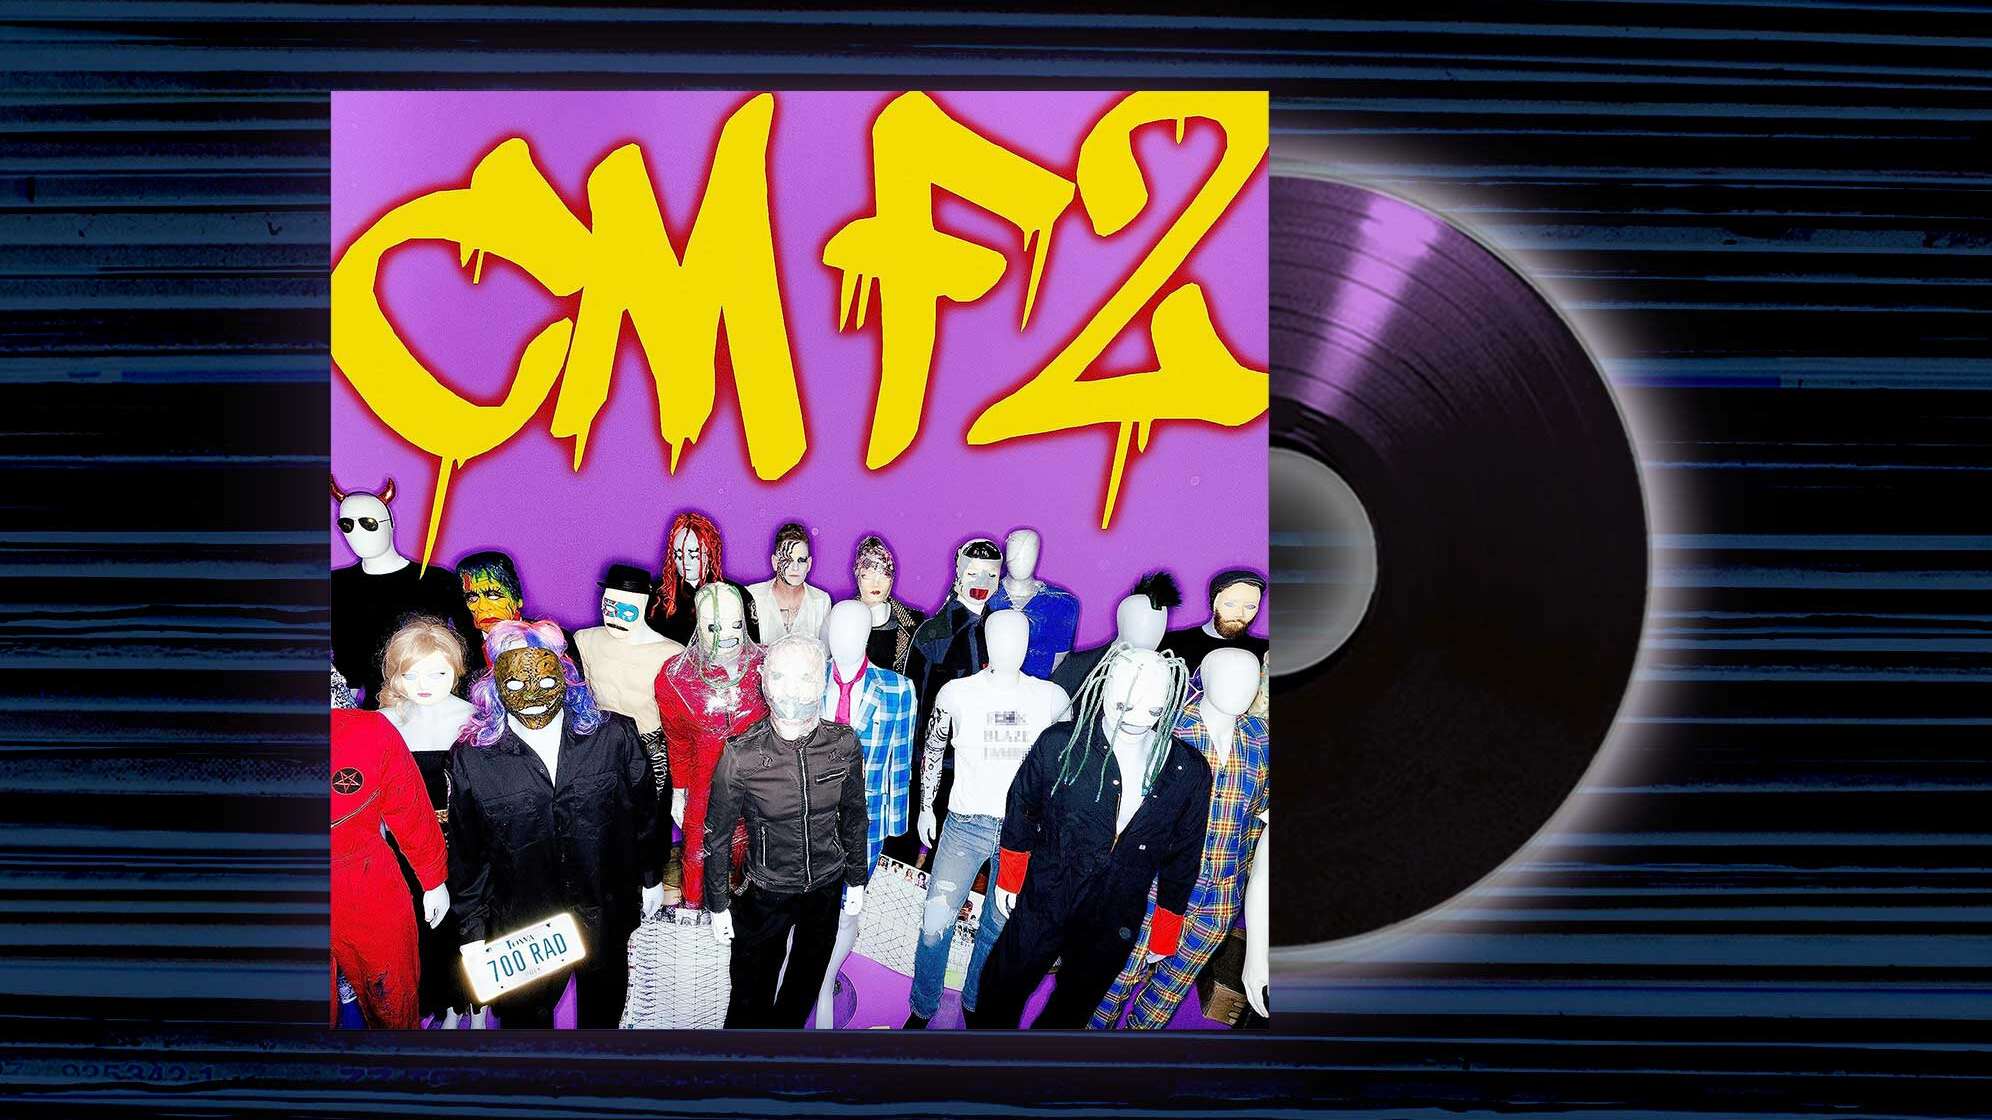 Das Albumcover von "CMF2" von Corey Taylor mit Puppen, unter ihnen Corey Taylor - geschminkt